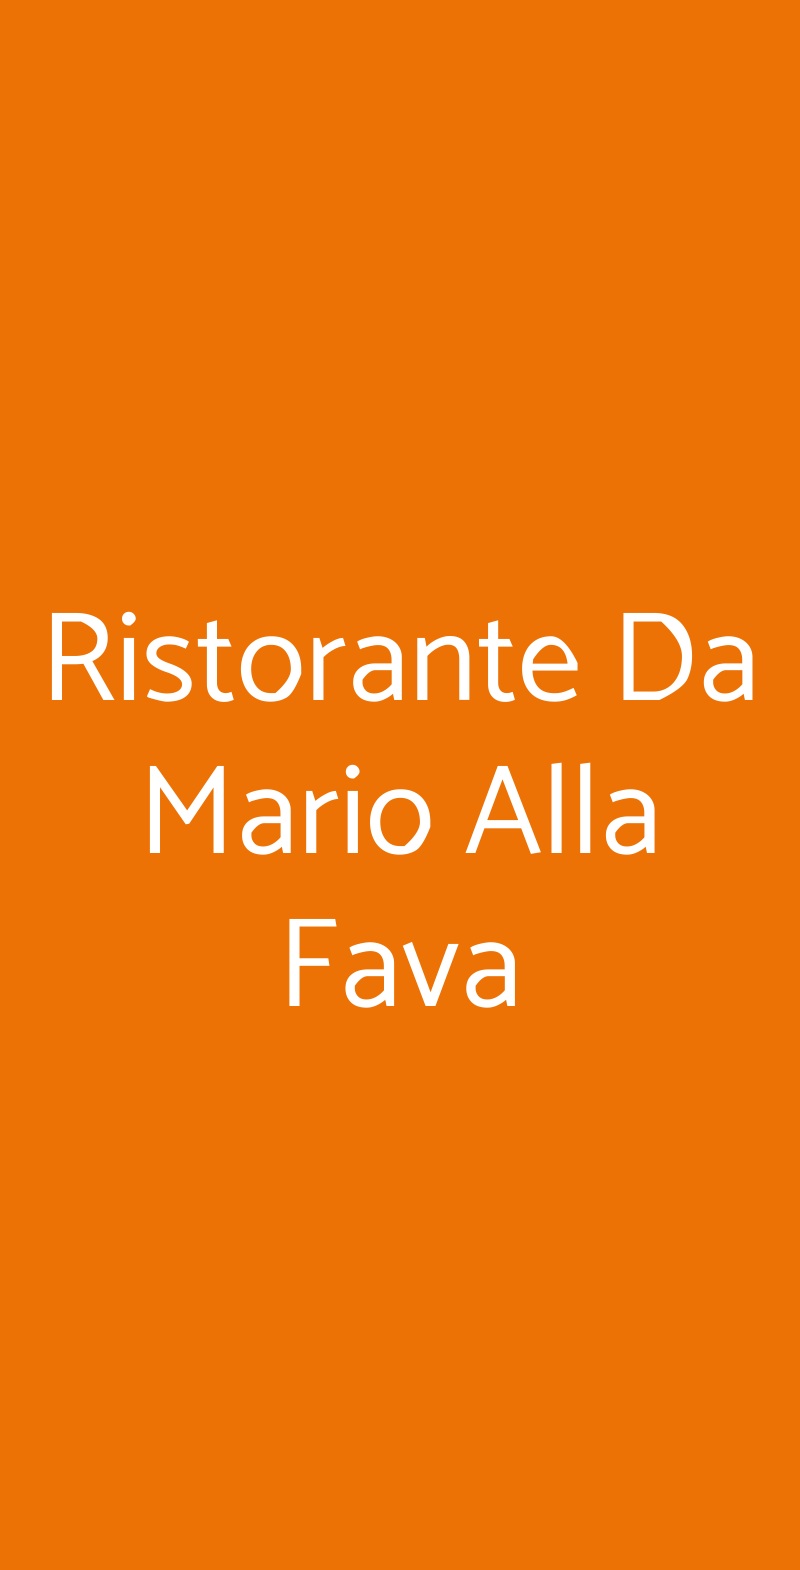 Ristorante Da Mario Alla Fava Venezia menù 1 pagina